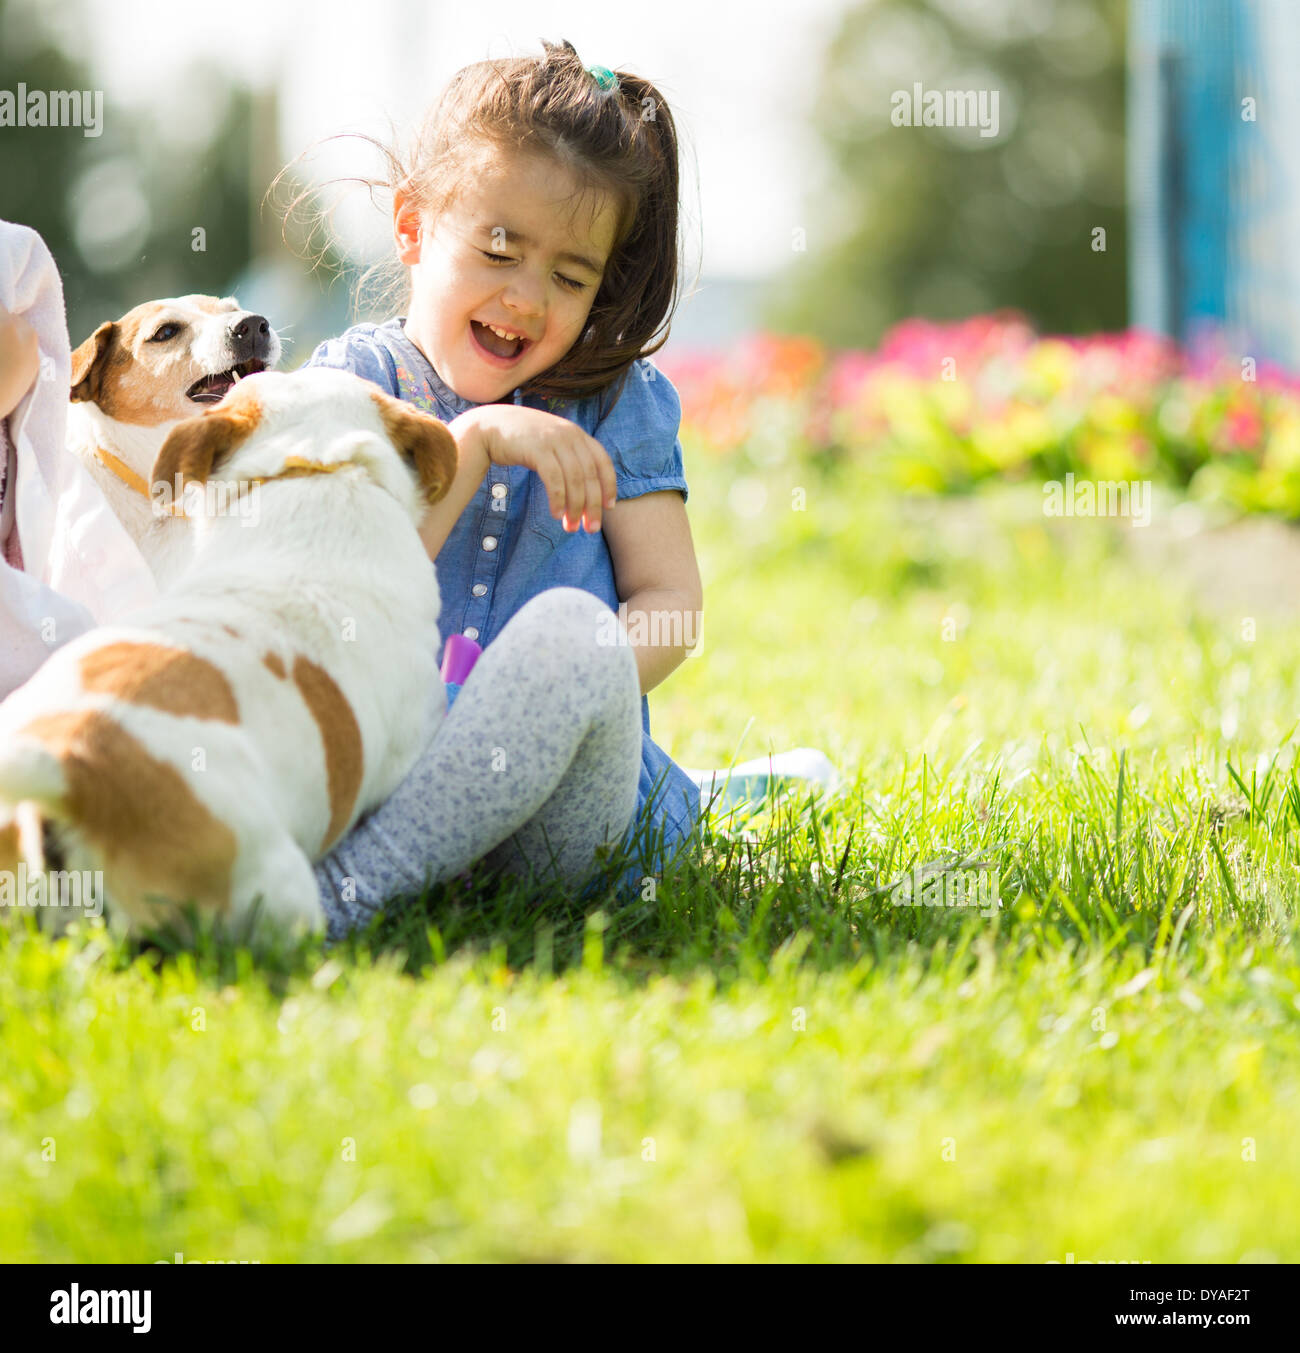 Petite fille jouant avec des chiens Banque D'Images